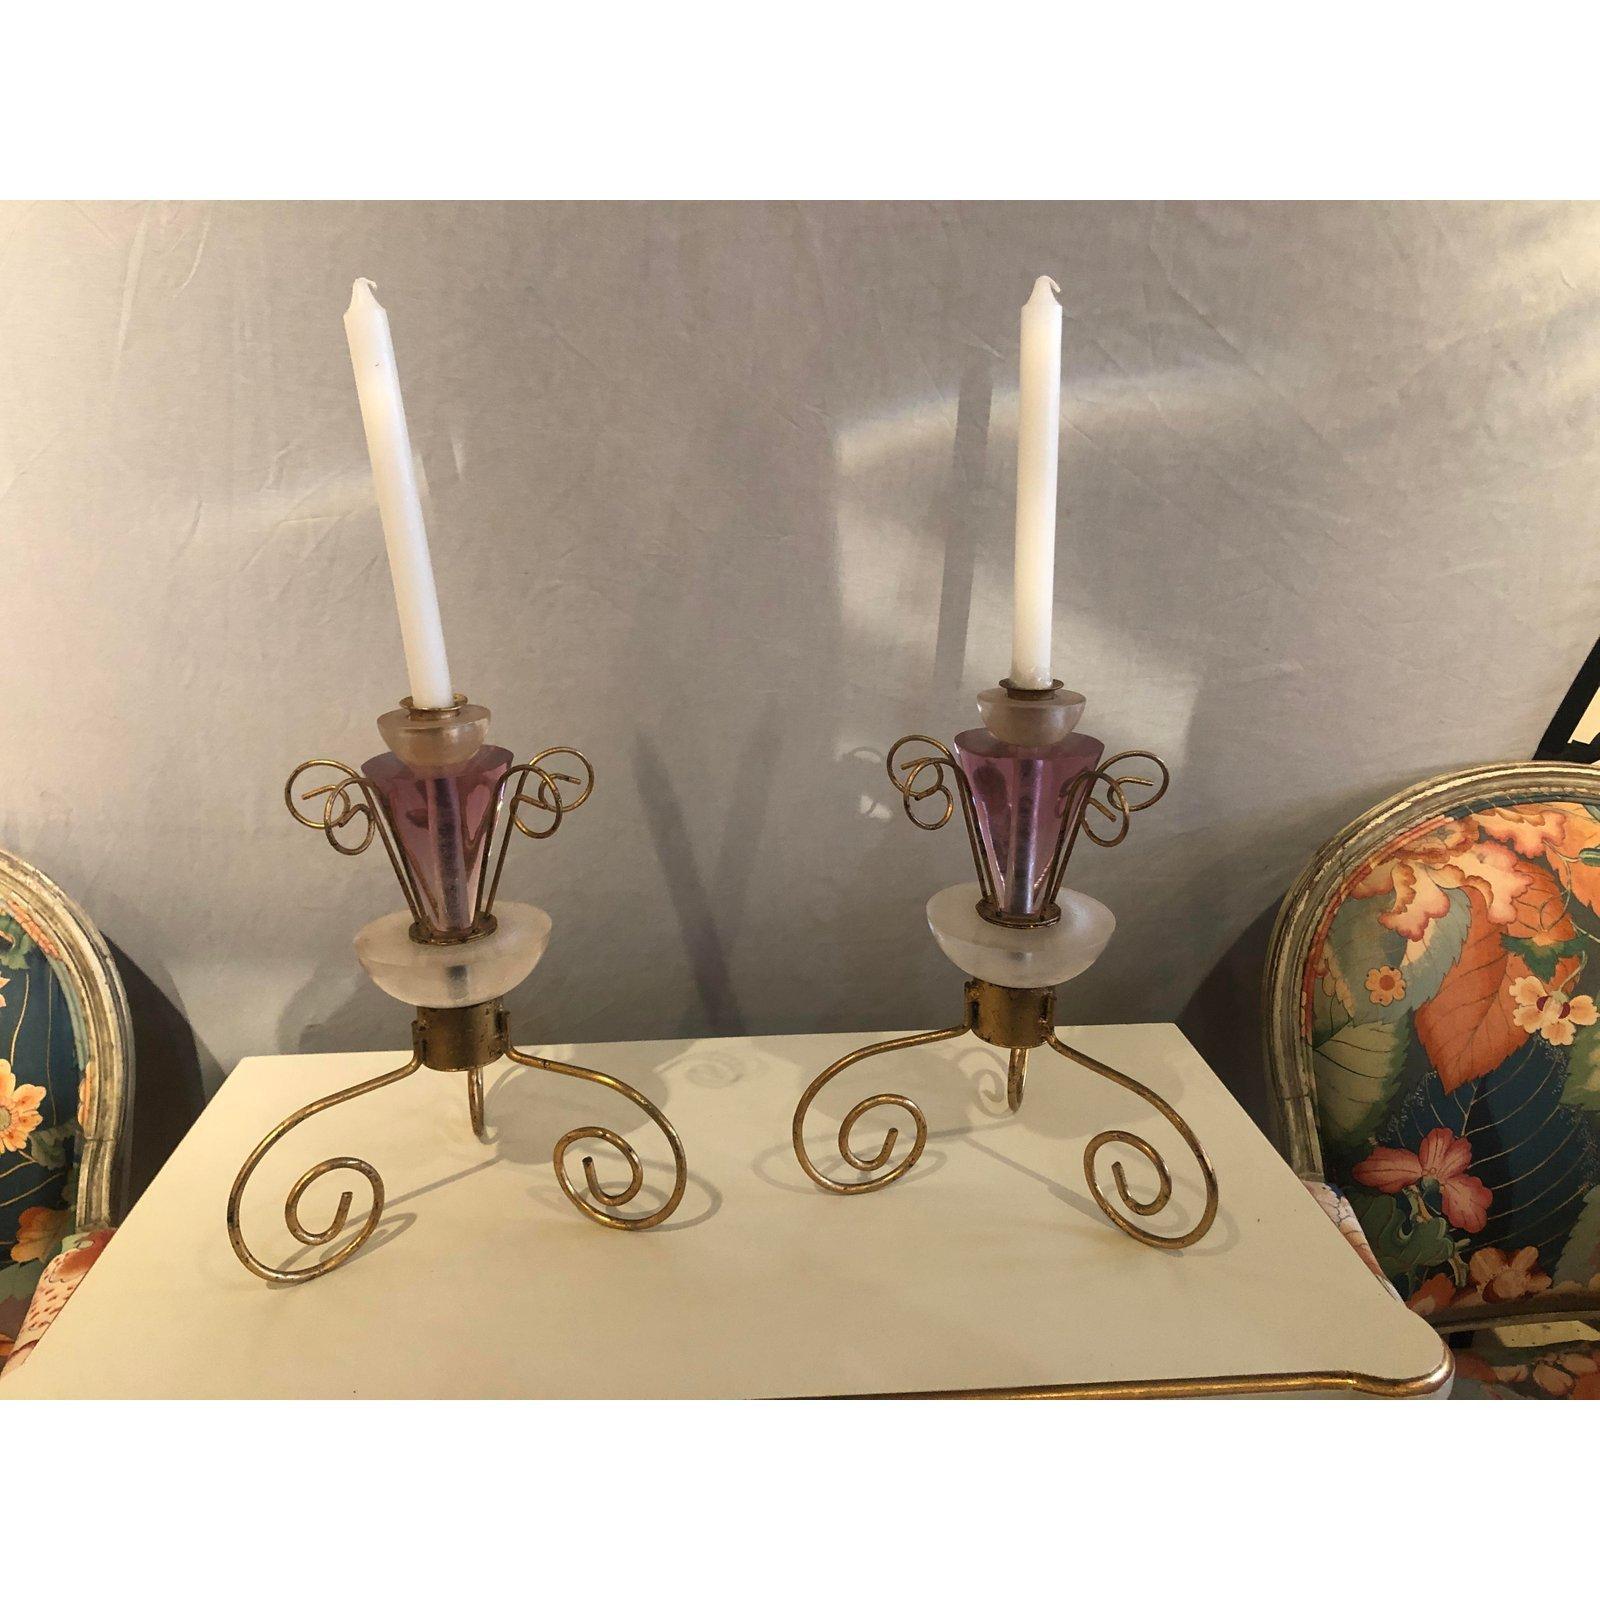 Ein wunderschönes Paar Art-Déco-Kerzenständer. Die Kerzenhalter sind aus Lucite und vergoldetem Metall gefertigt und haben eine schöne rosa oder violette Farbe, die ihnen Glamour und Stil verleiht.

Maße: b 10